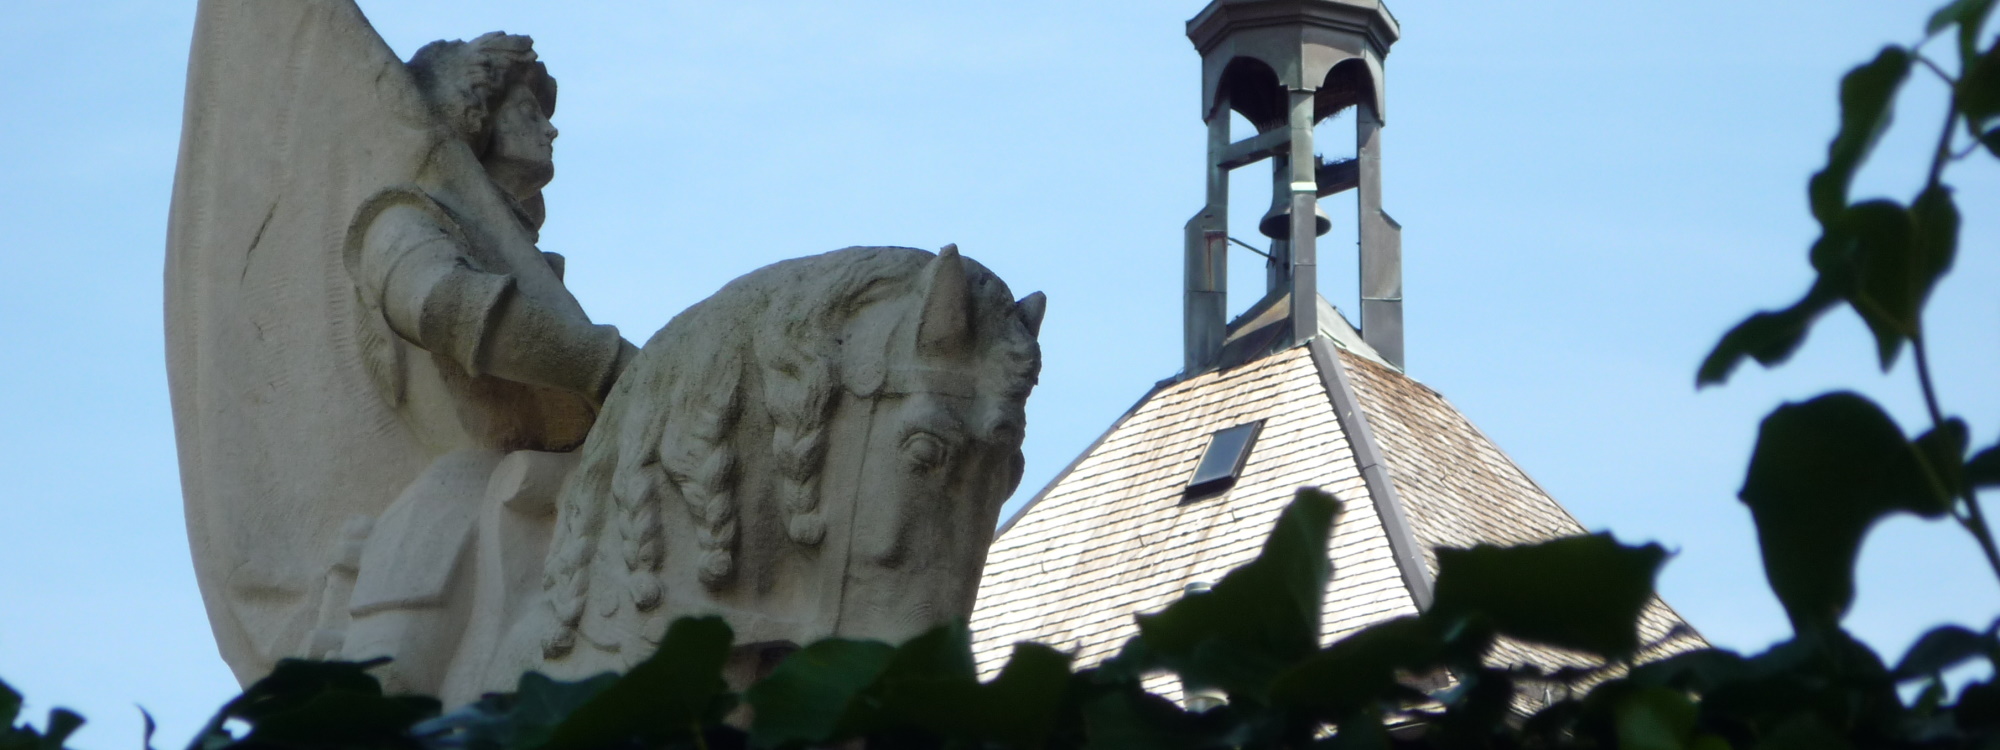 Detailaufnahme des Reiters am Kriegerdenkmal in Laufen mit Dach des Oberen Stadttors im Hintergrund